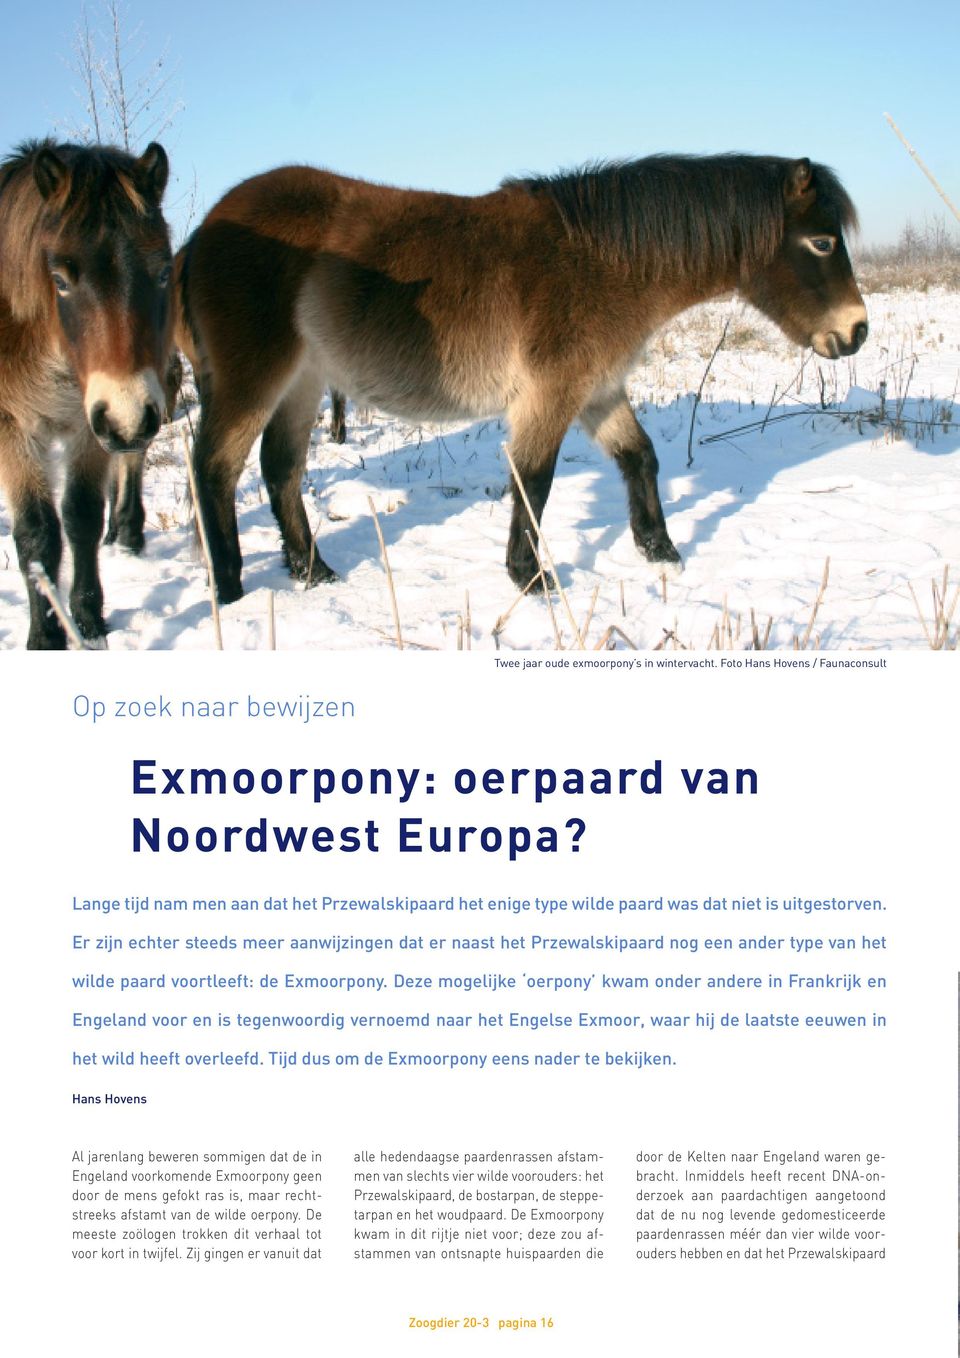 Er zijn echter steeds meer aanwijzingen dat er naast het Przewalskipaard nog een ander type van het wilde paard voortleeft: de Exmoorpony.